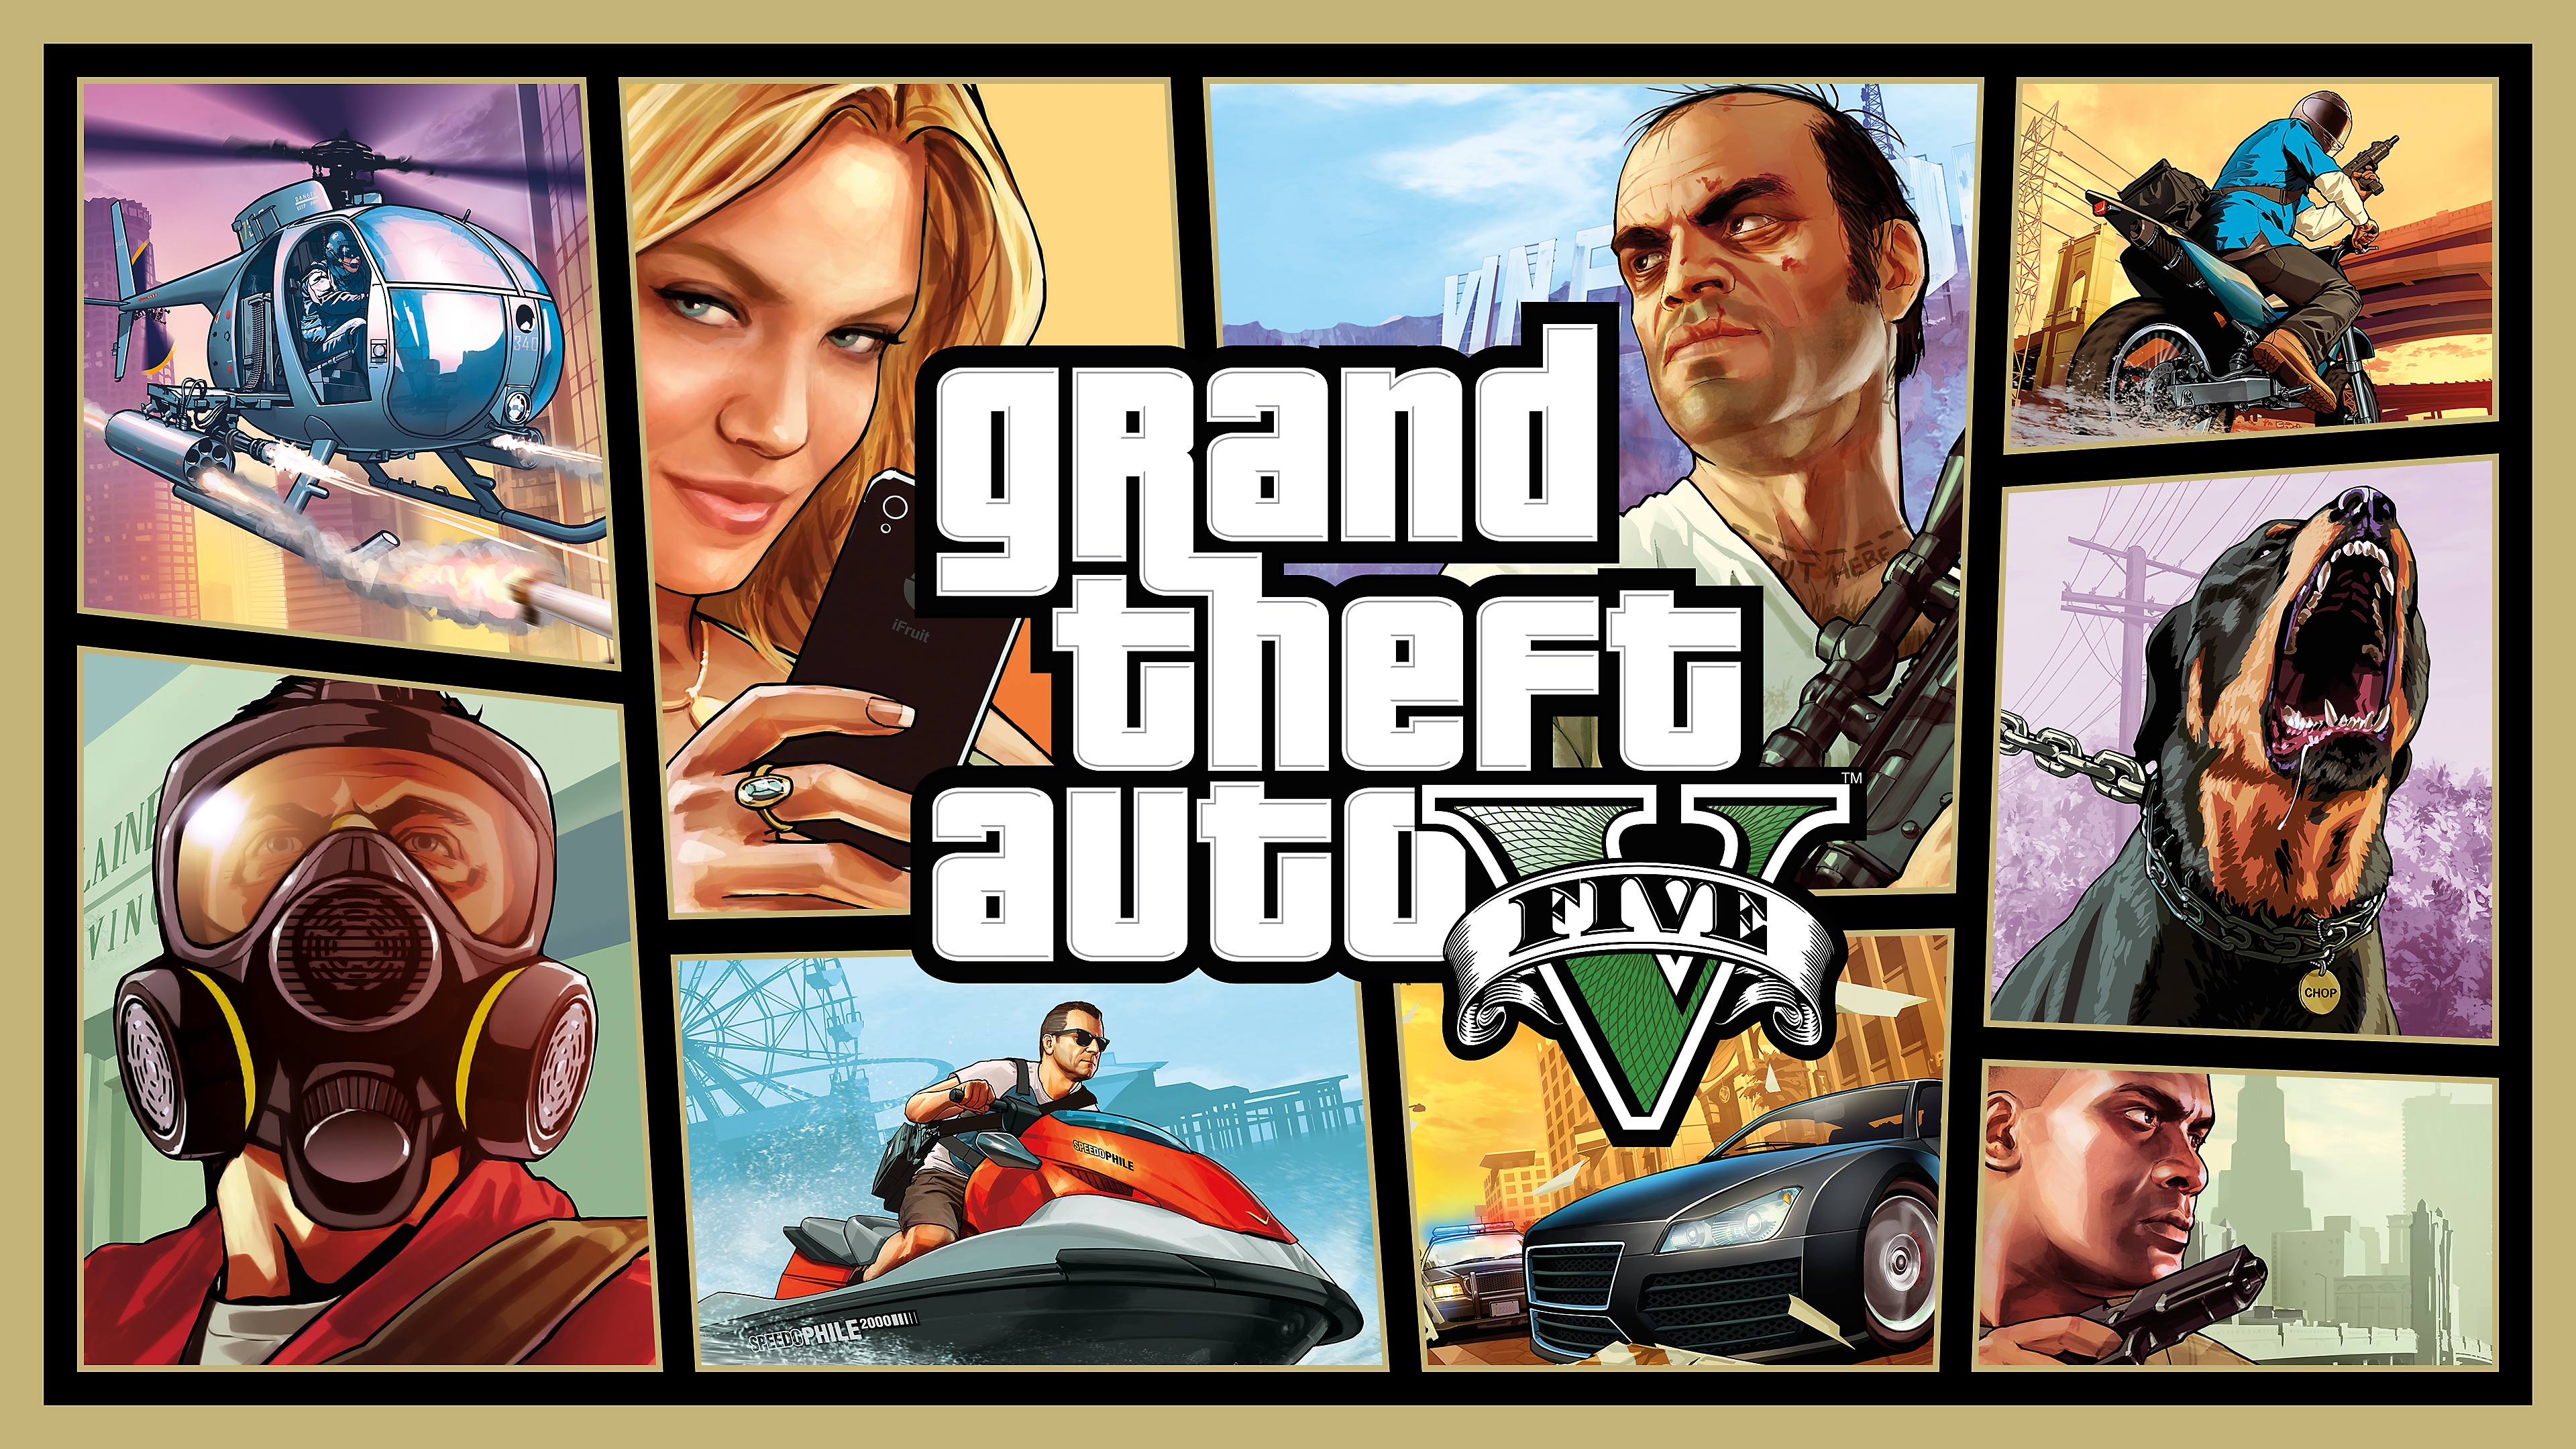 Mode histoire de GTA V - Illustration principale d'un montage d'images avec les personnages principaux, un rottweiler, un jet-ski, des voitures et un hélicoptère